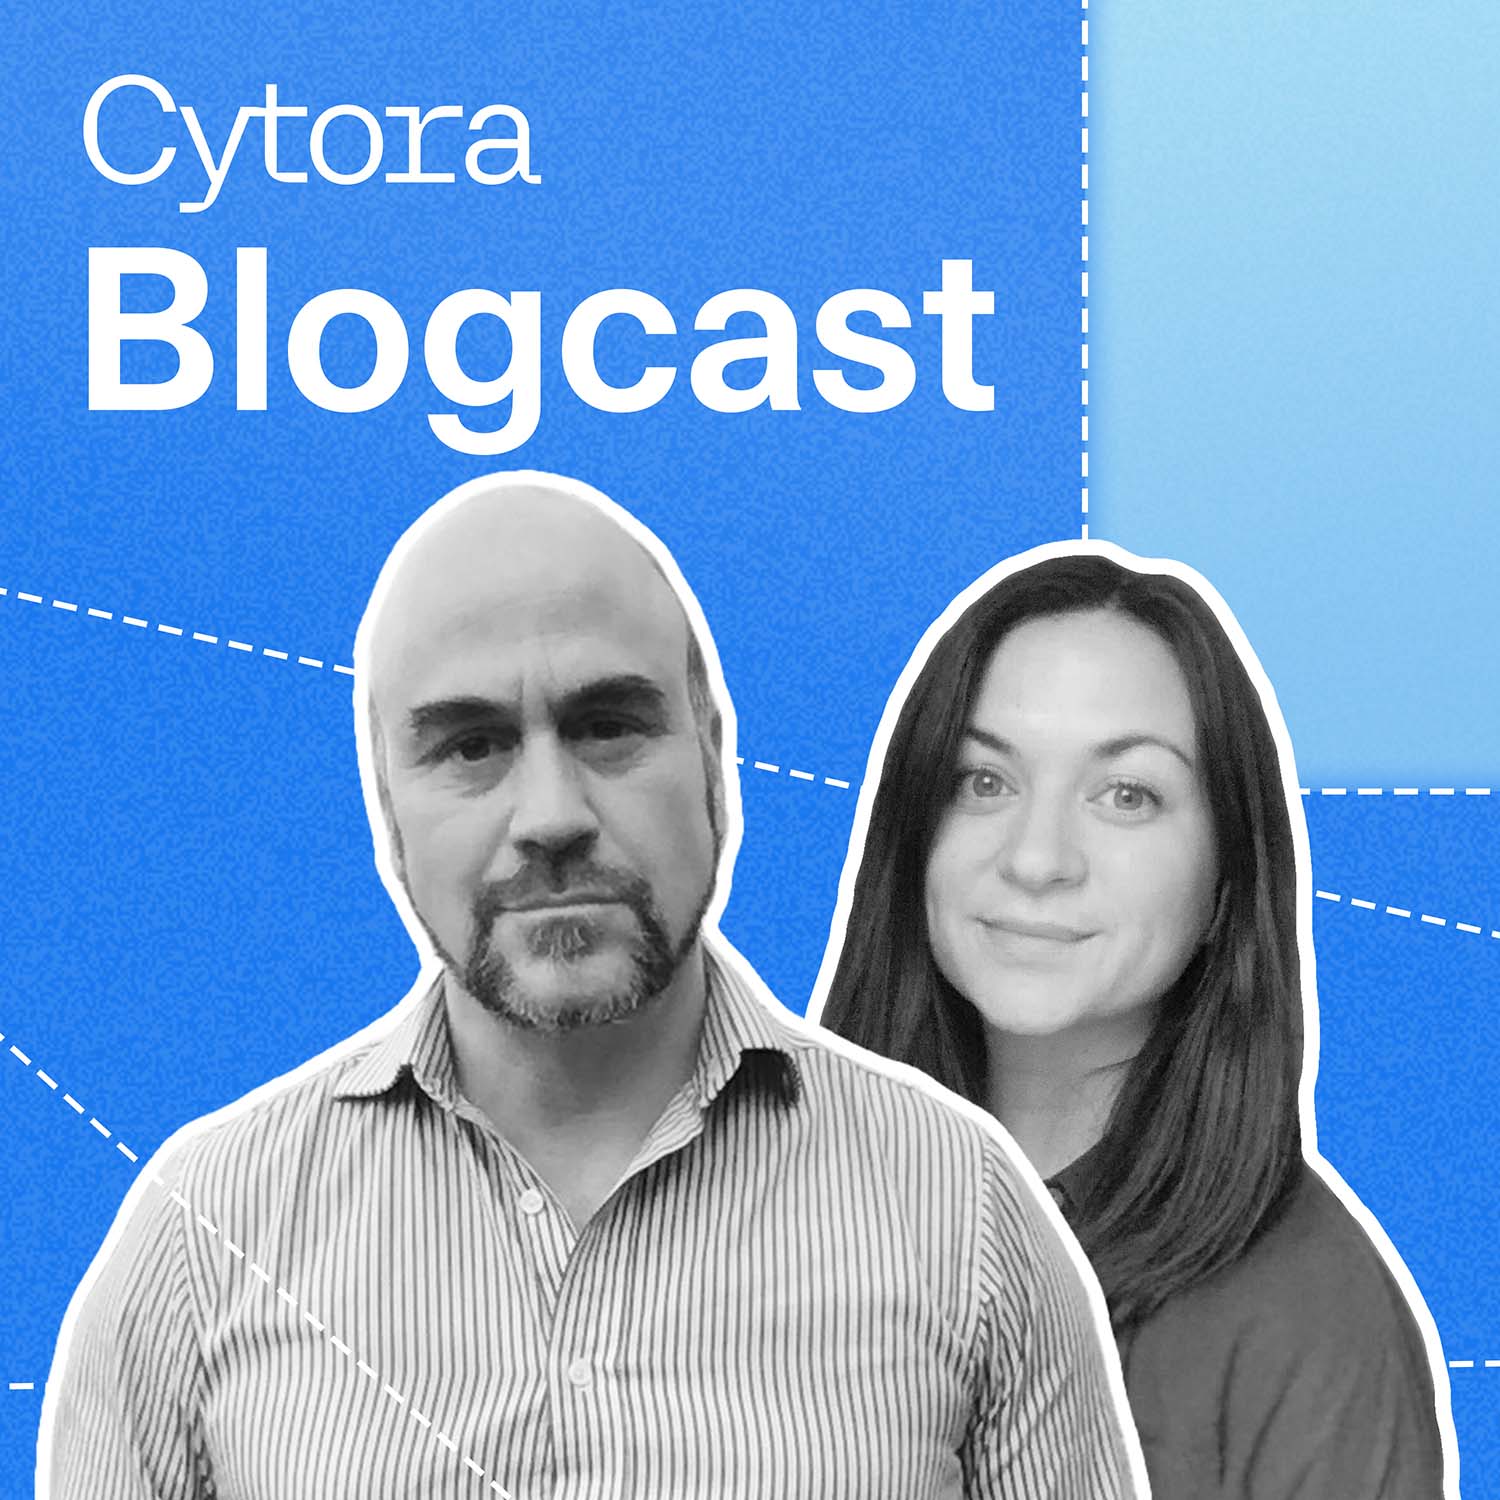 Artwork for podcast Cytora Blogcast